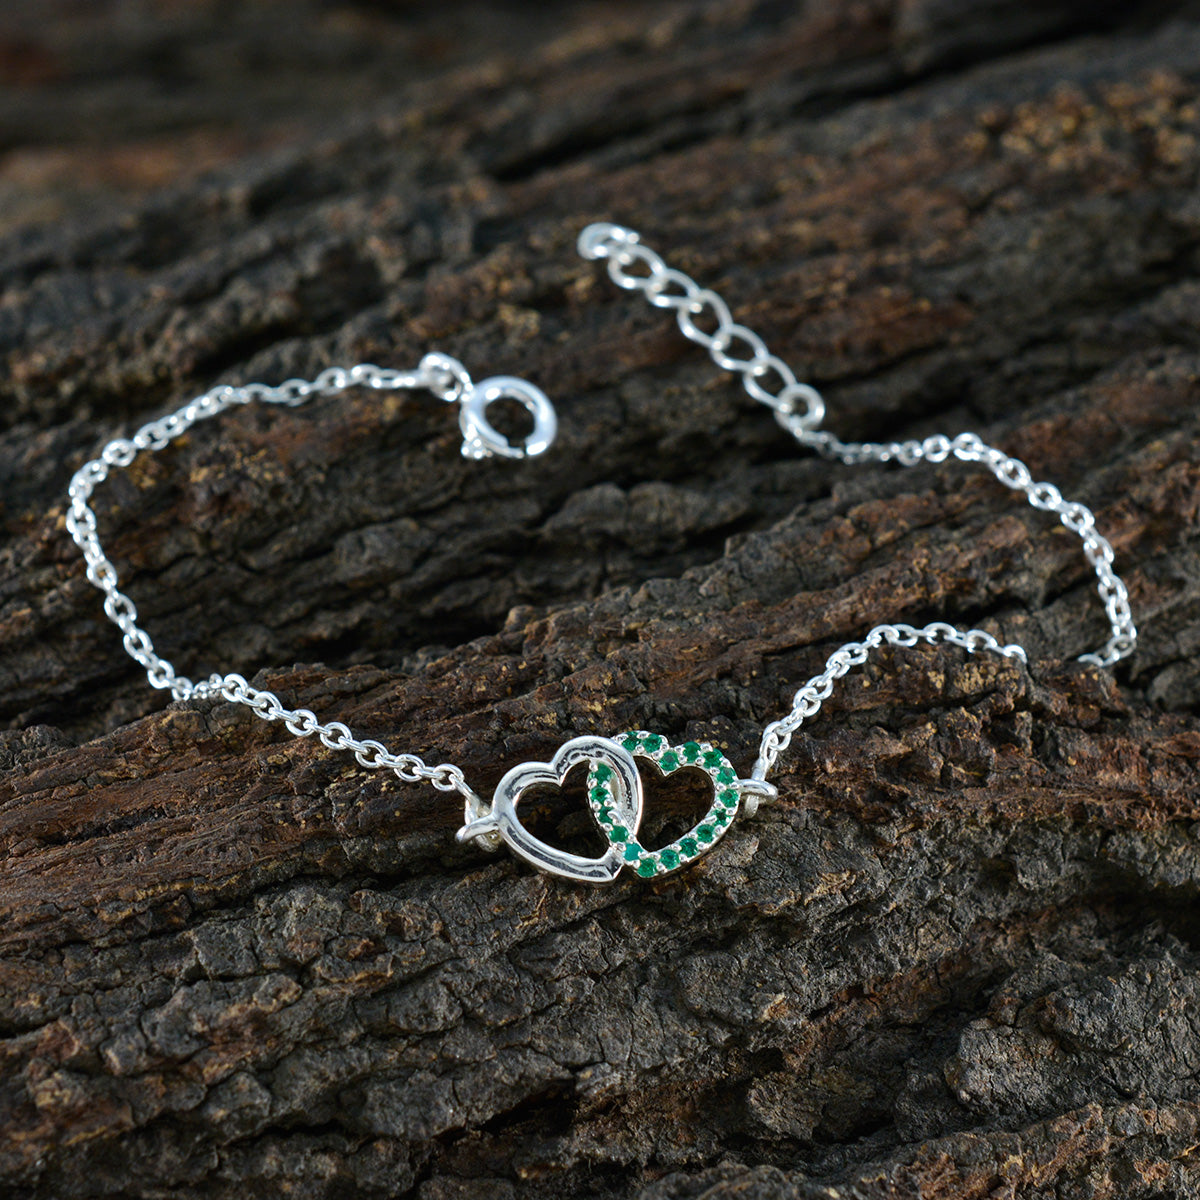 riyo оптовый браслет из стерлингового серебра 925 пробы для женщин изумрудный браслет cz безель браслет с пружинным кольцом браслет-подвеска l размер 6-8,5 дюймов.